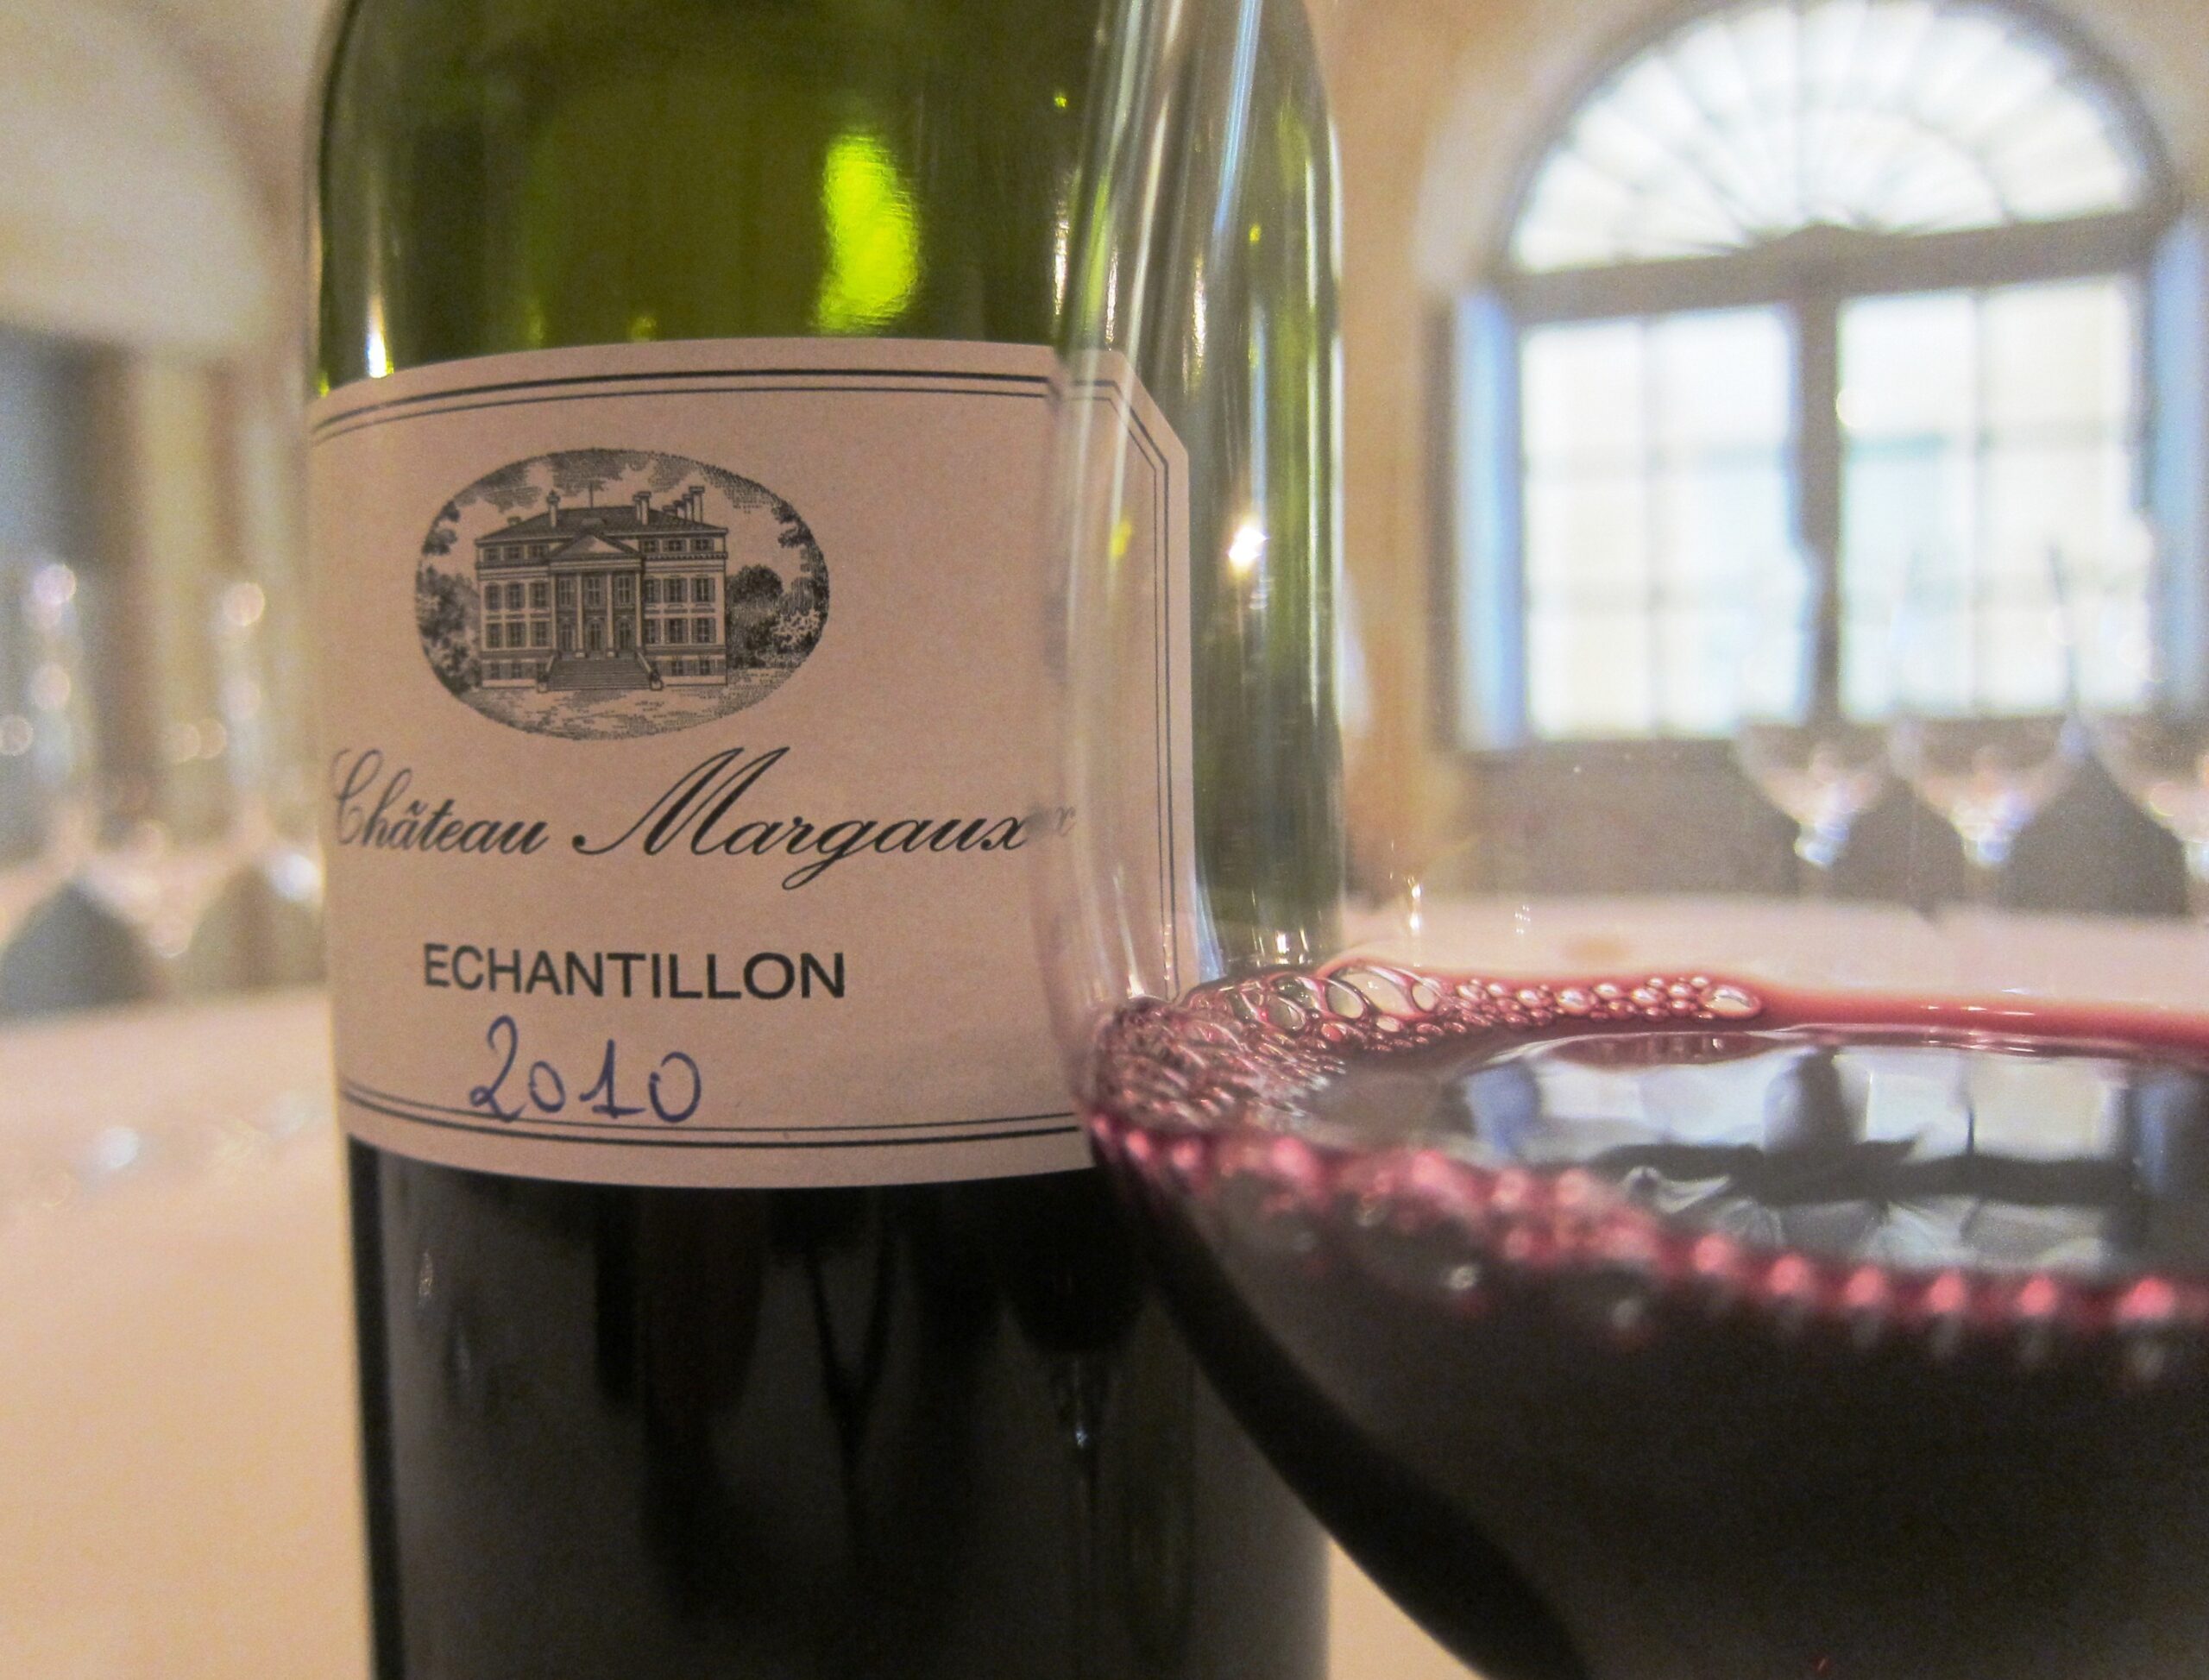 2010 Chateau Margaux, Pavillon Rouge, Elegant, Regal Bordeaux Wine